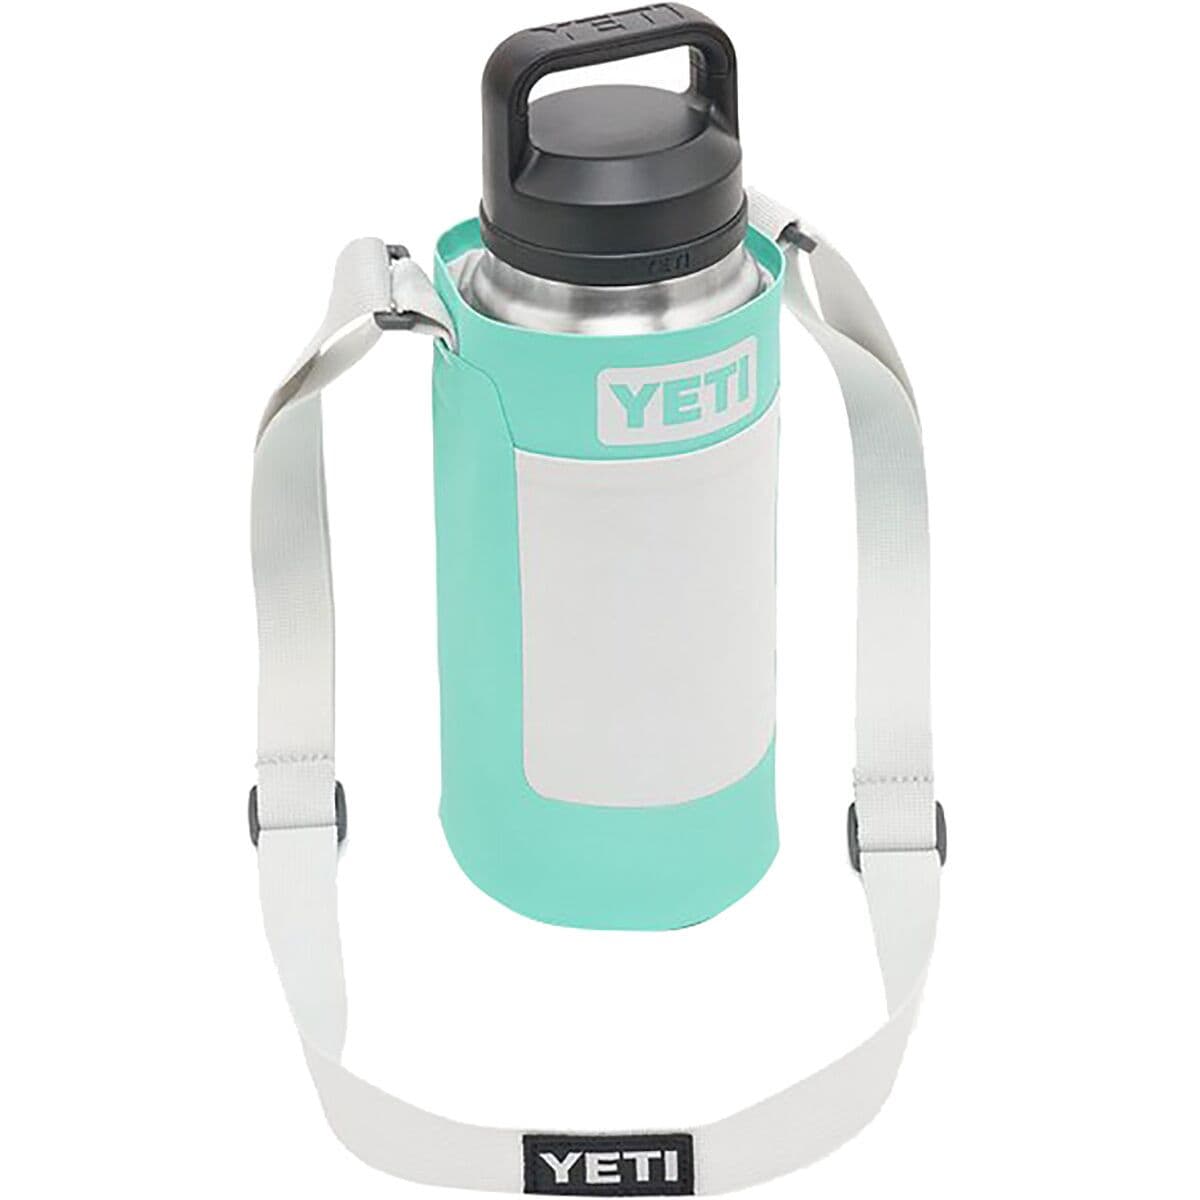 YETI- Rambler Bottle Sling Small / Charcoal